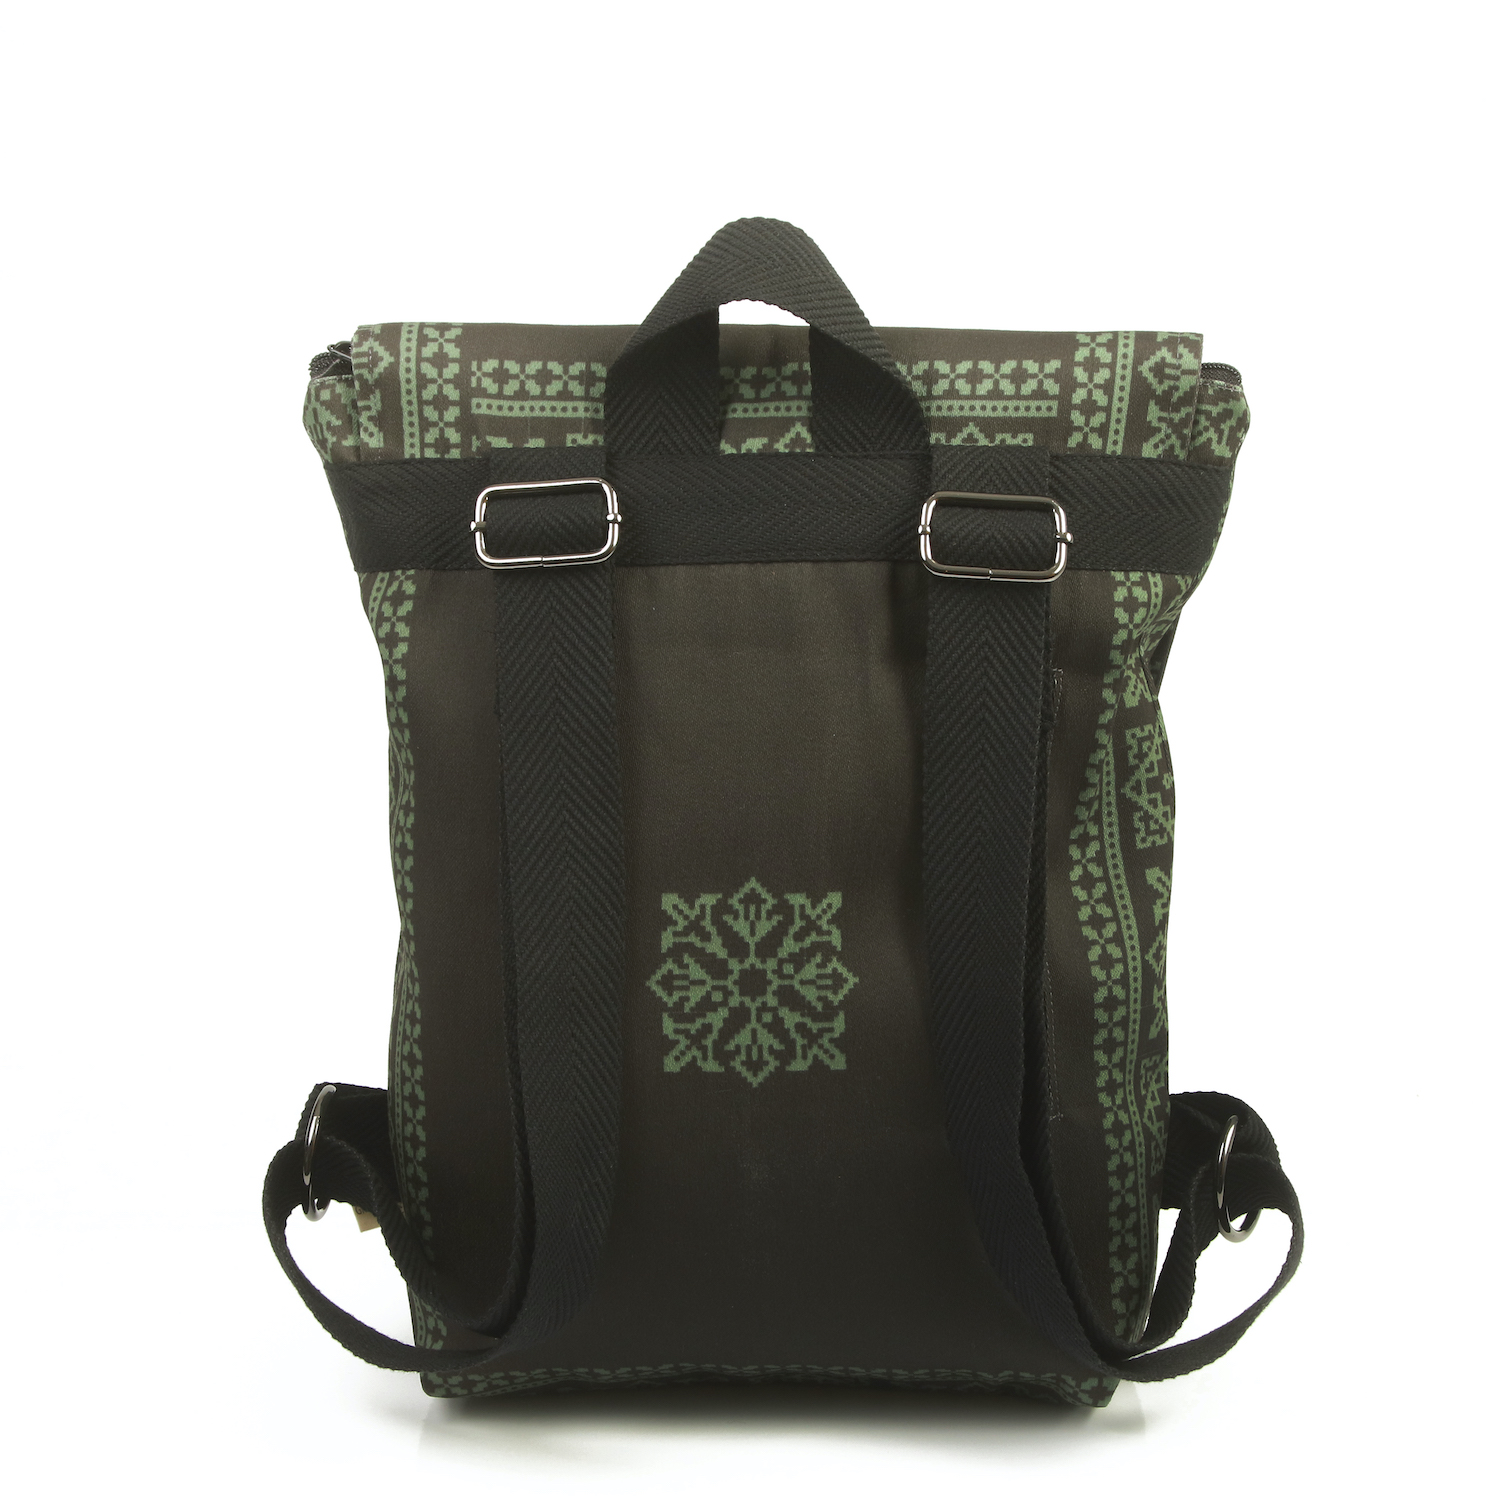 LazyDayz-Designs-Backpack-γυναικείος-σάκος-πλάτης-χειροποίητος bb0707c